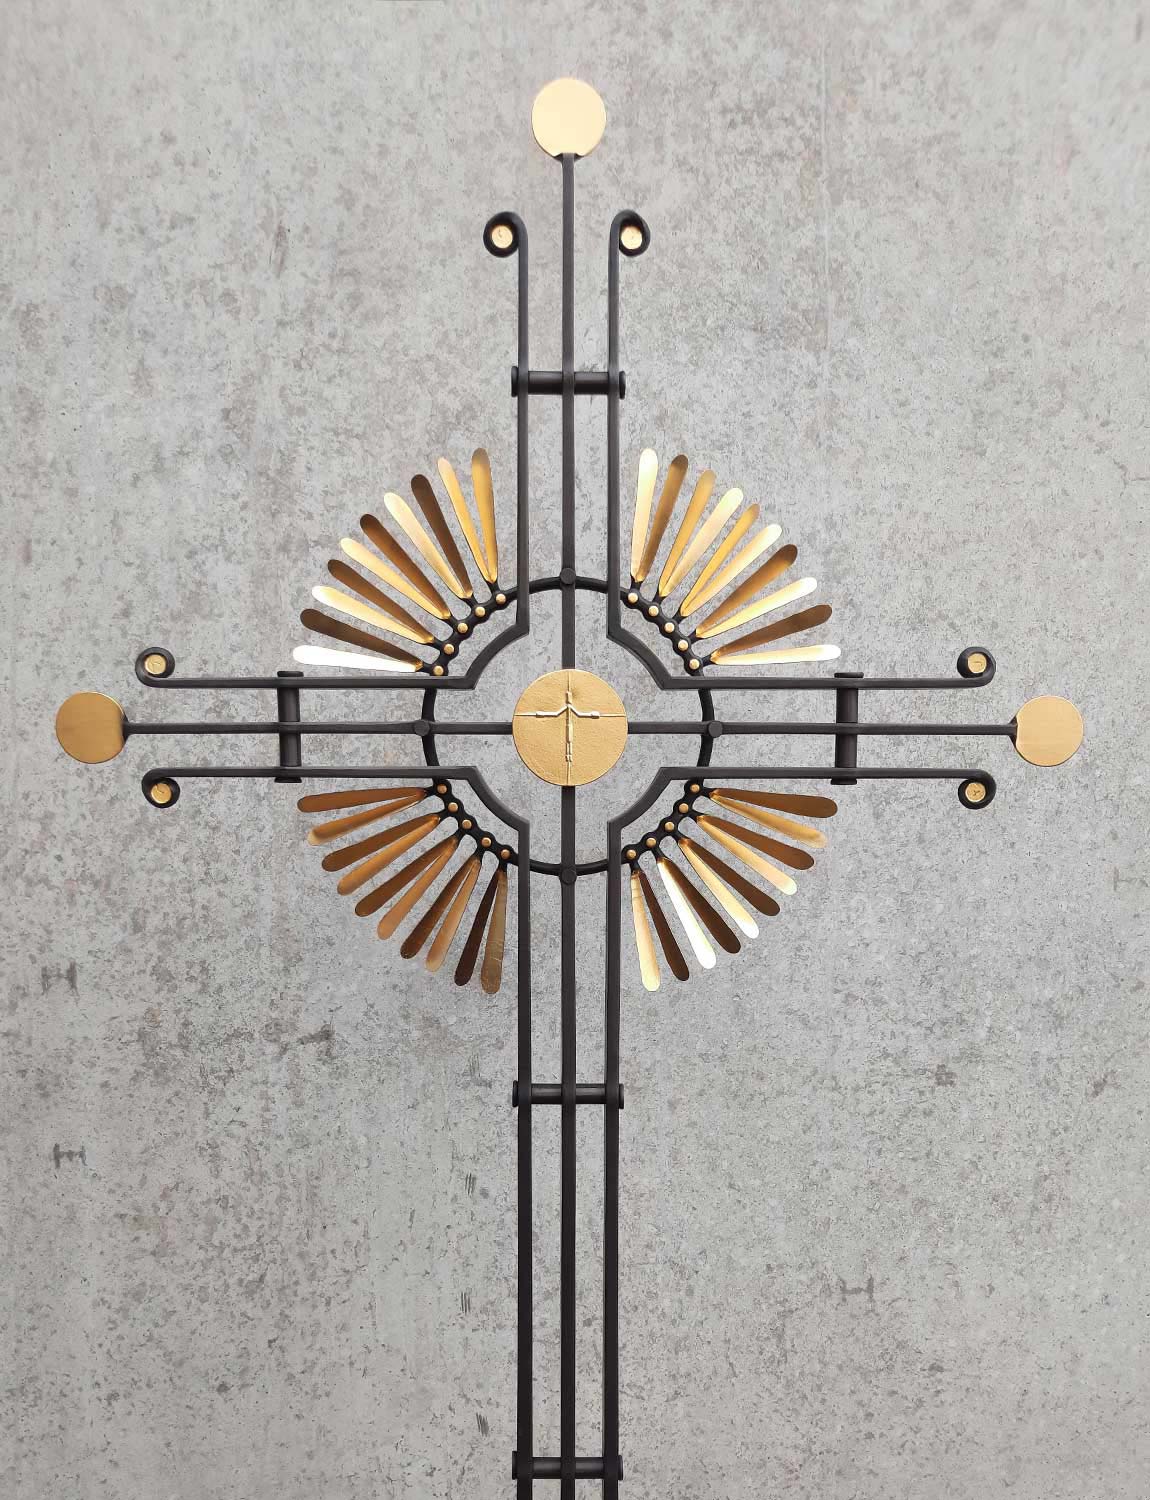 Gesamtansicht zeitgenössisches Grabkreuz mit Lichtkreuz